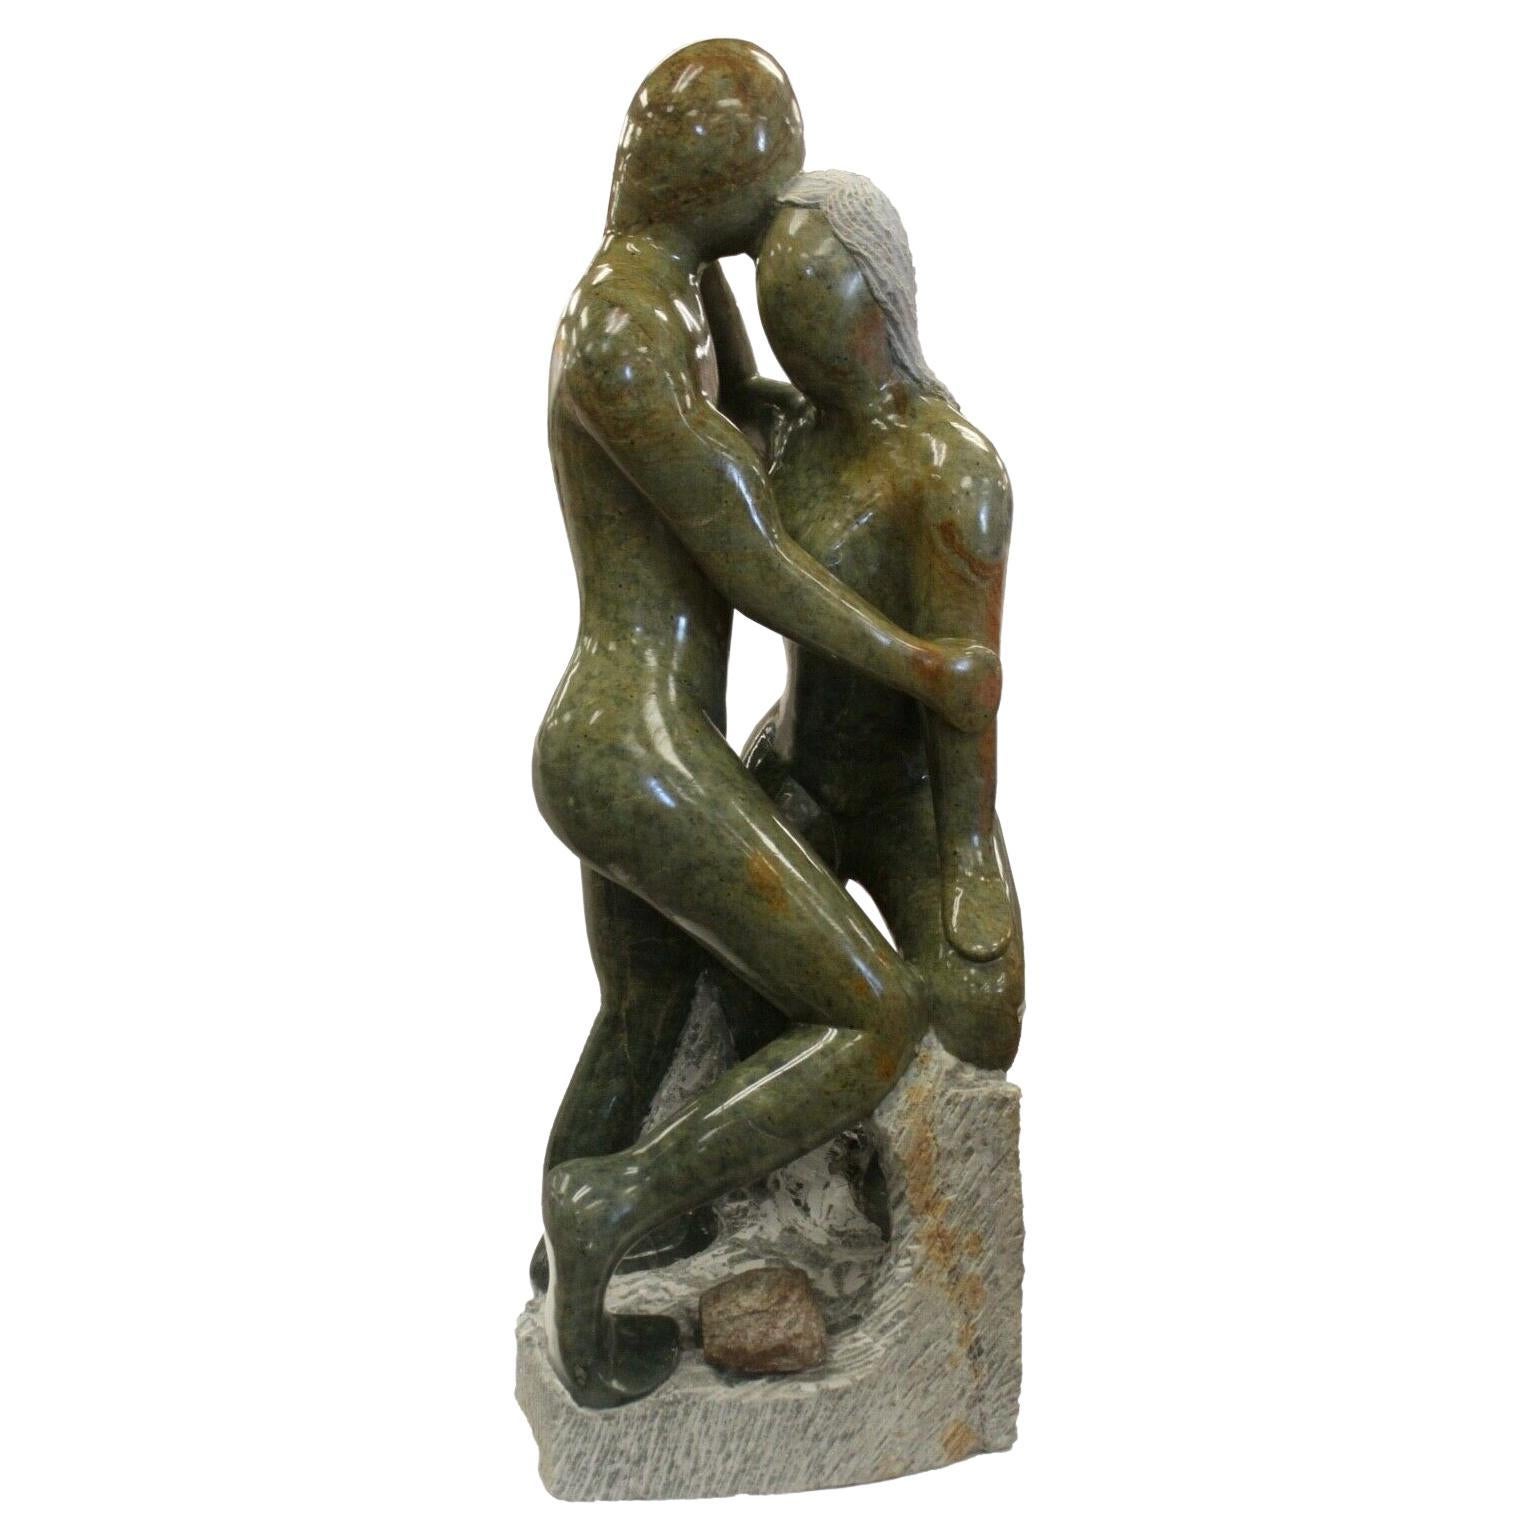 Grande sculpture décorative en grès vert représentant deux personnes s'embrassant